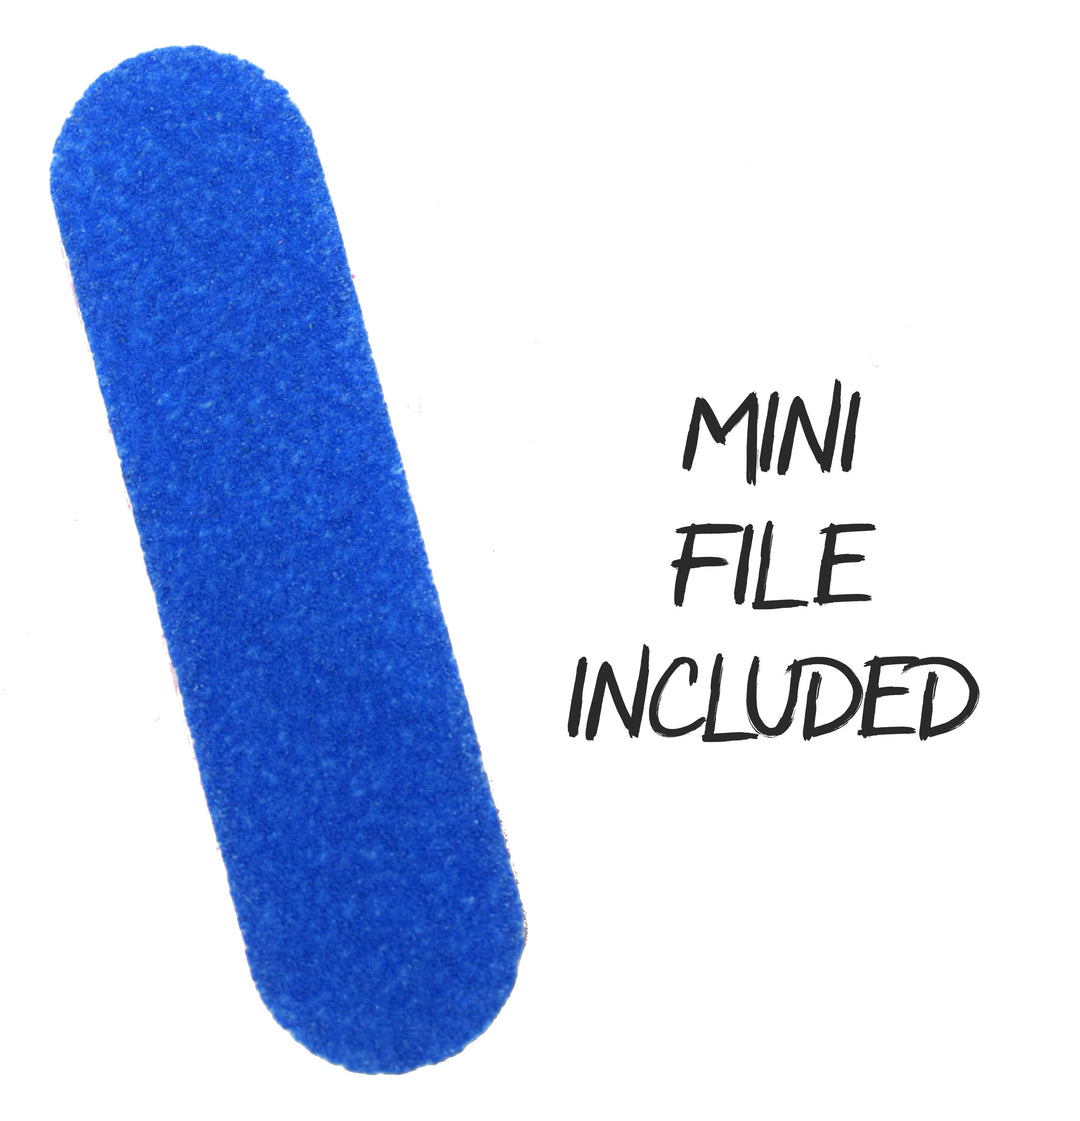 Teak Tuning Teak Swap Fingerboard Deck & ColorBlock Wrap - "Turquoise Tide" - 32mm x 97mm